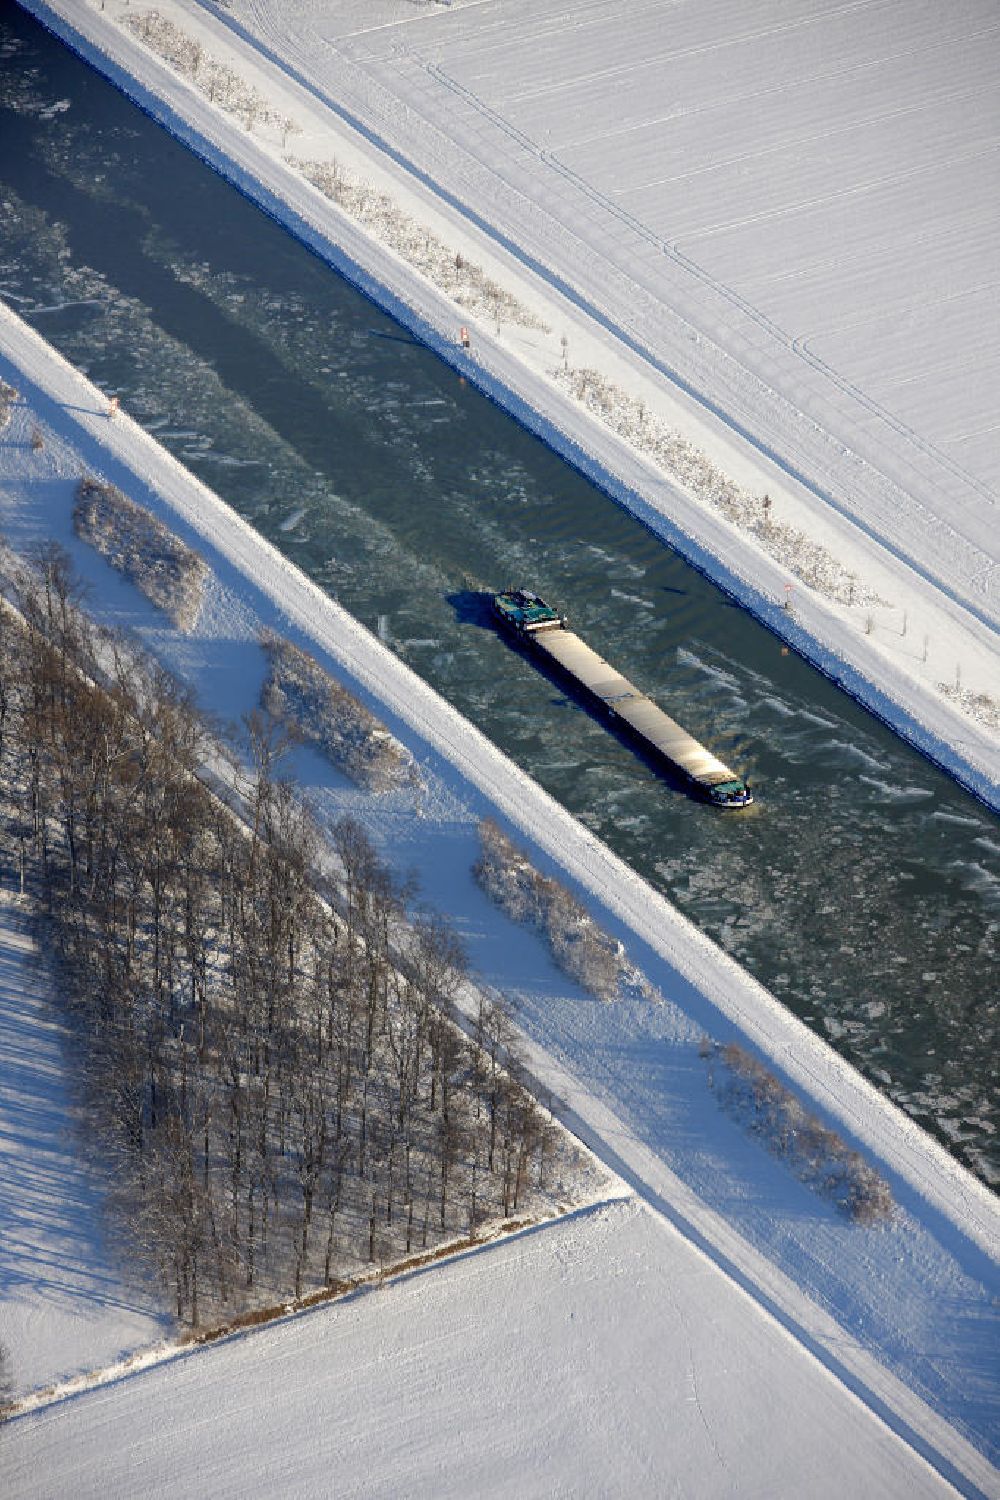 Aerial photograph Olfen - Binnenschiffahrt auf dem winterlich verschneiten und vereisten Dortmund-Ems-Kanal bei Olfen. Shipping on the snow-covered and icy Dortmund-Ems Canal